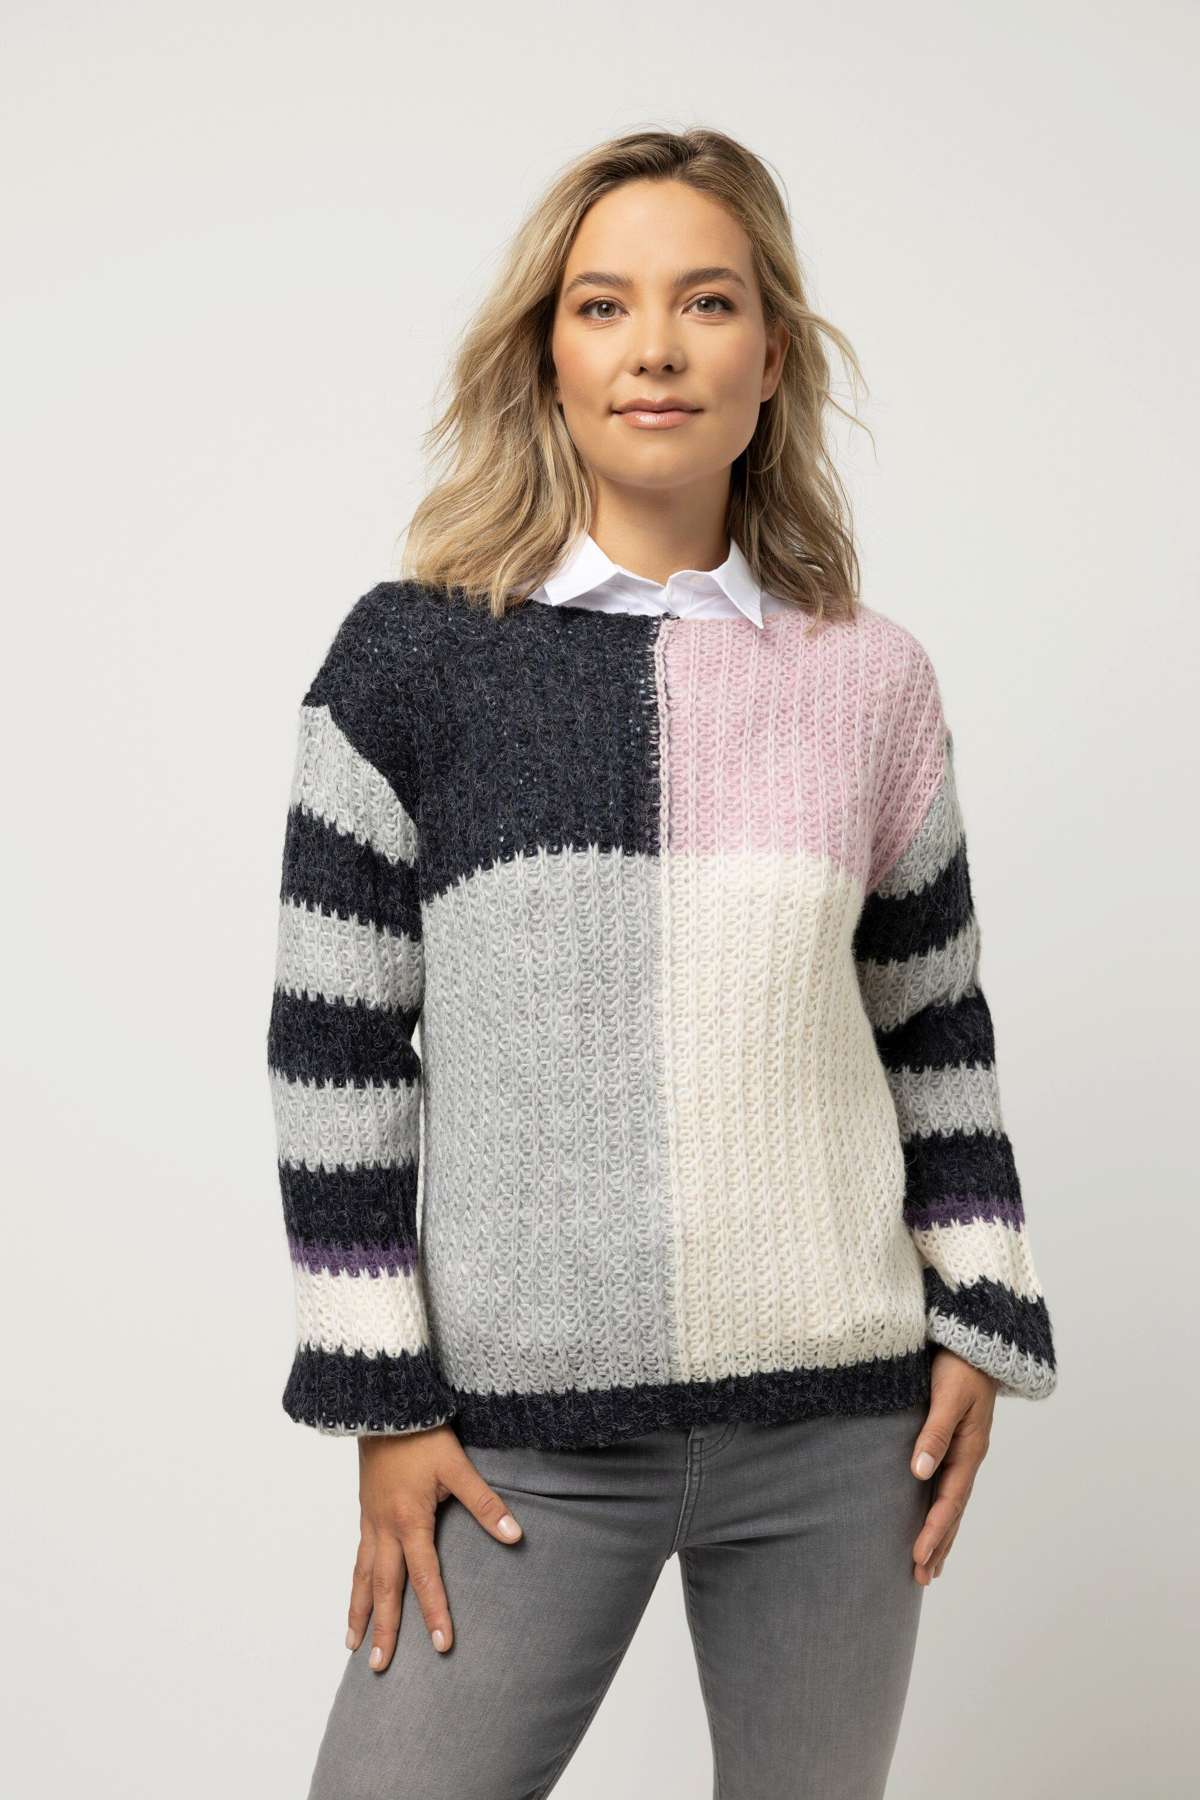 Вязаный пуловер-свитер оверсайз с круглым вырезом и длинными рукавами.